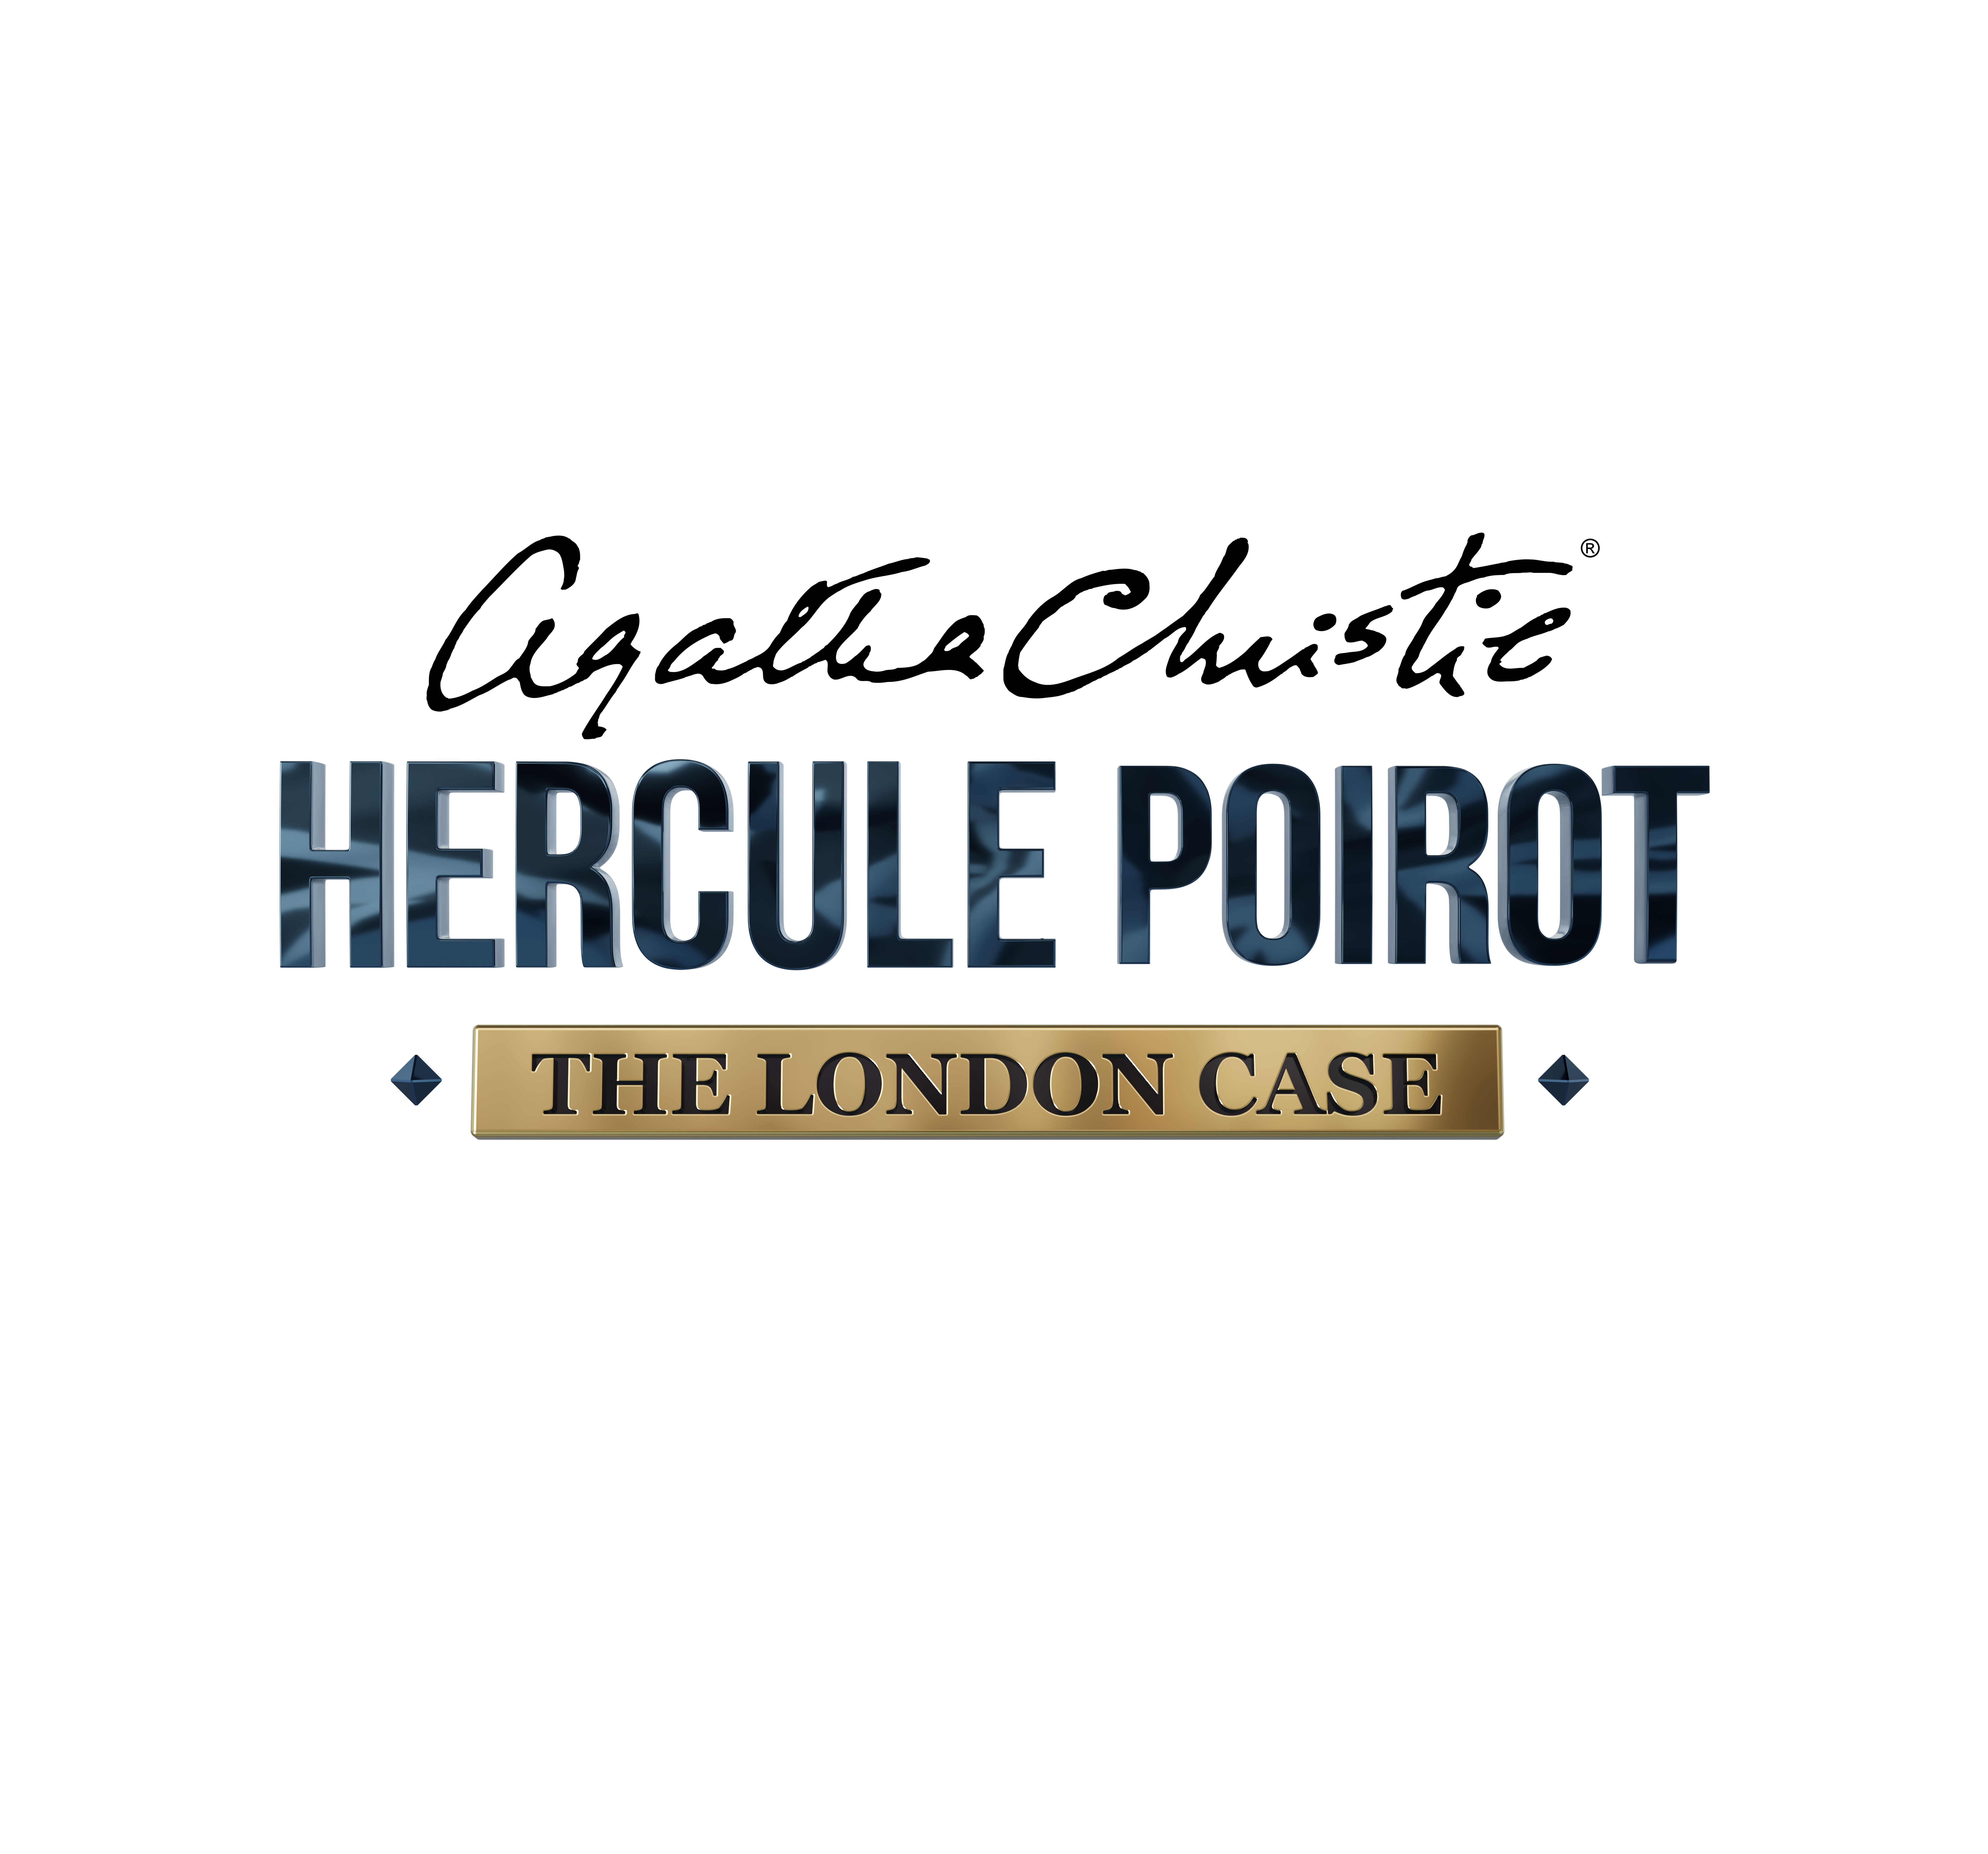 London Media des – Neues – spannendes von for beliebten im hardware angekündigt life Abenteuer MYC Poirot Hercule Detektivs Herzen